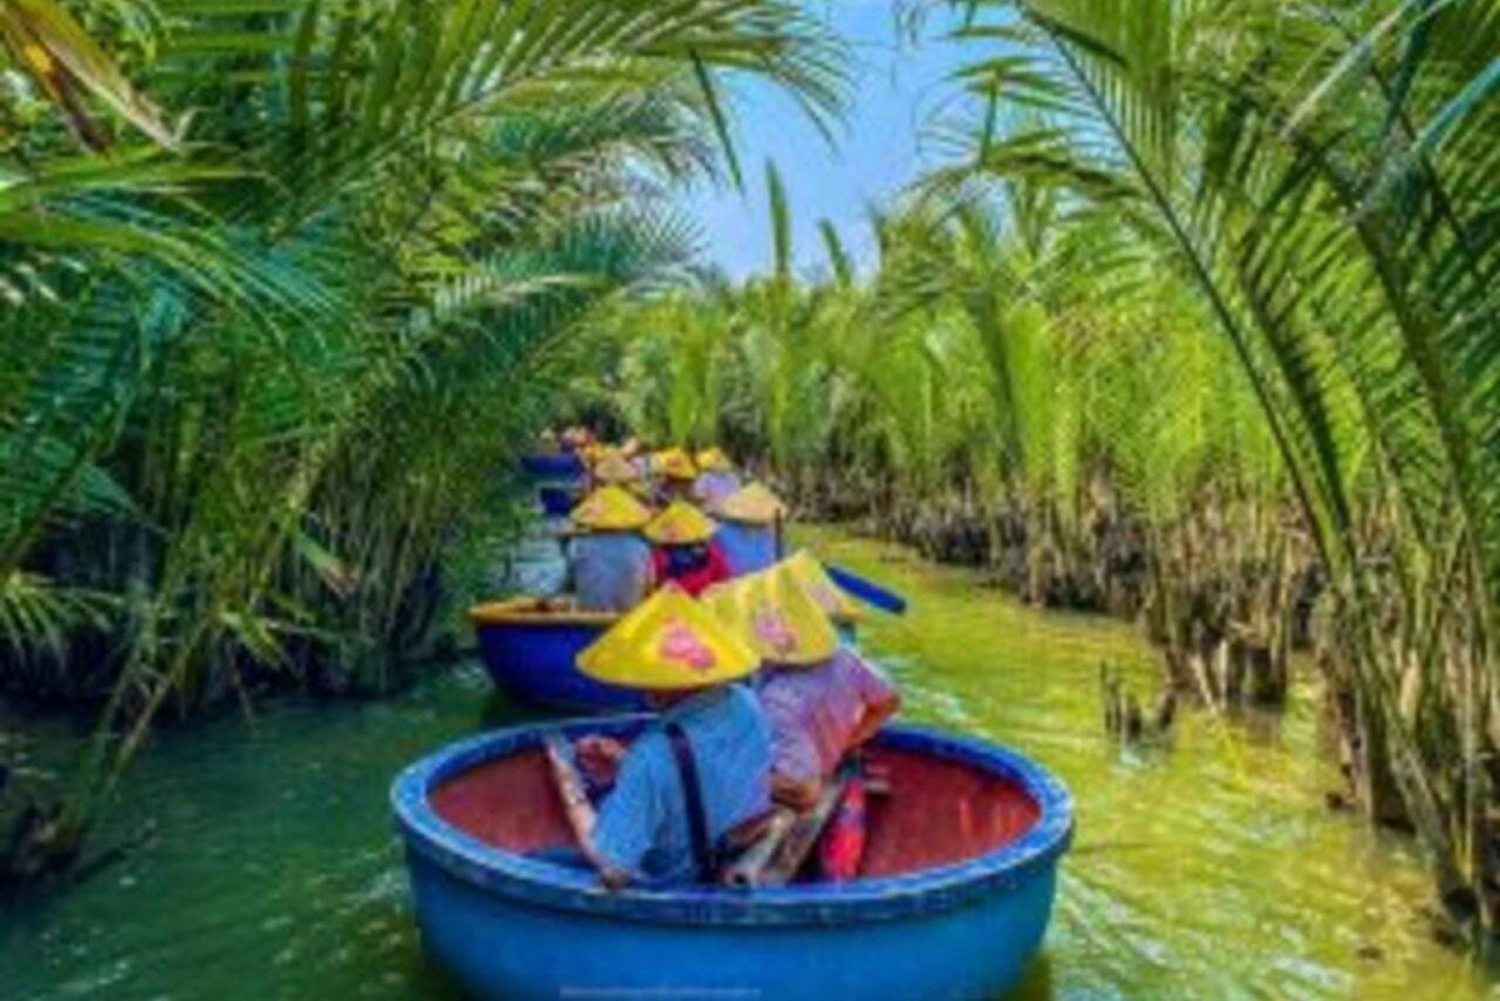 Hoi An: Båtfärd med bambukorg i Bay Mau-kokosnötsskogen